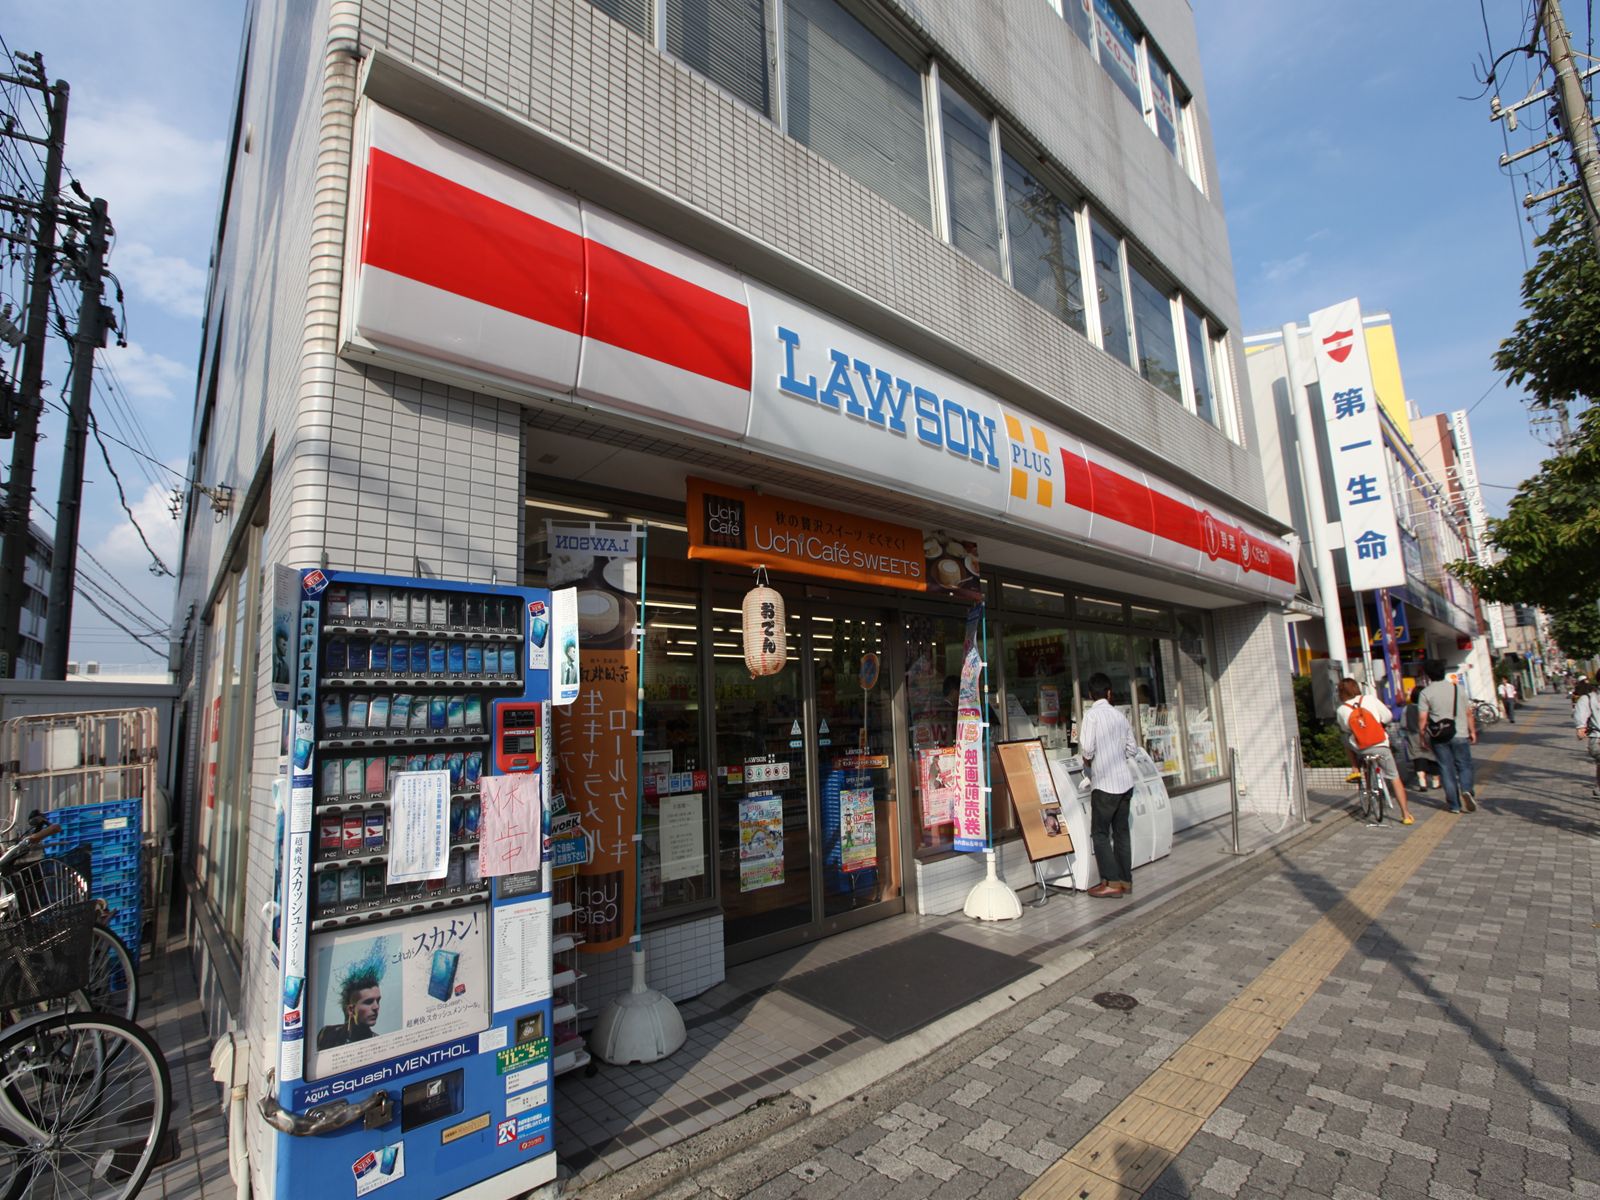 Convenience store. 35m until Lawson plus Gokisho Sanchome store (convenience store)